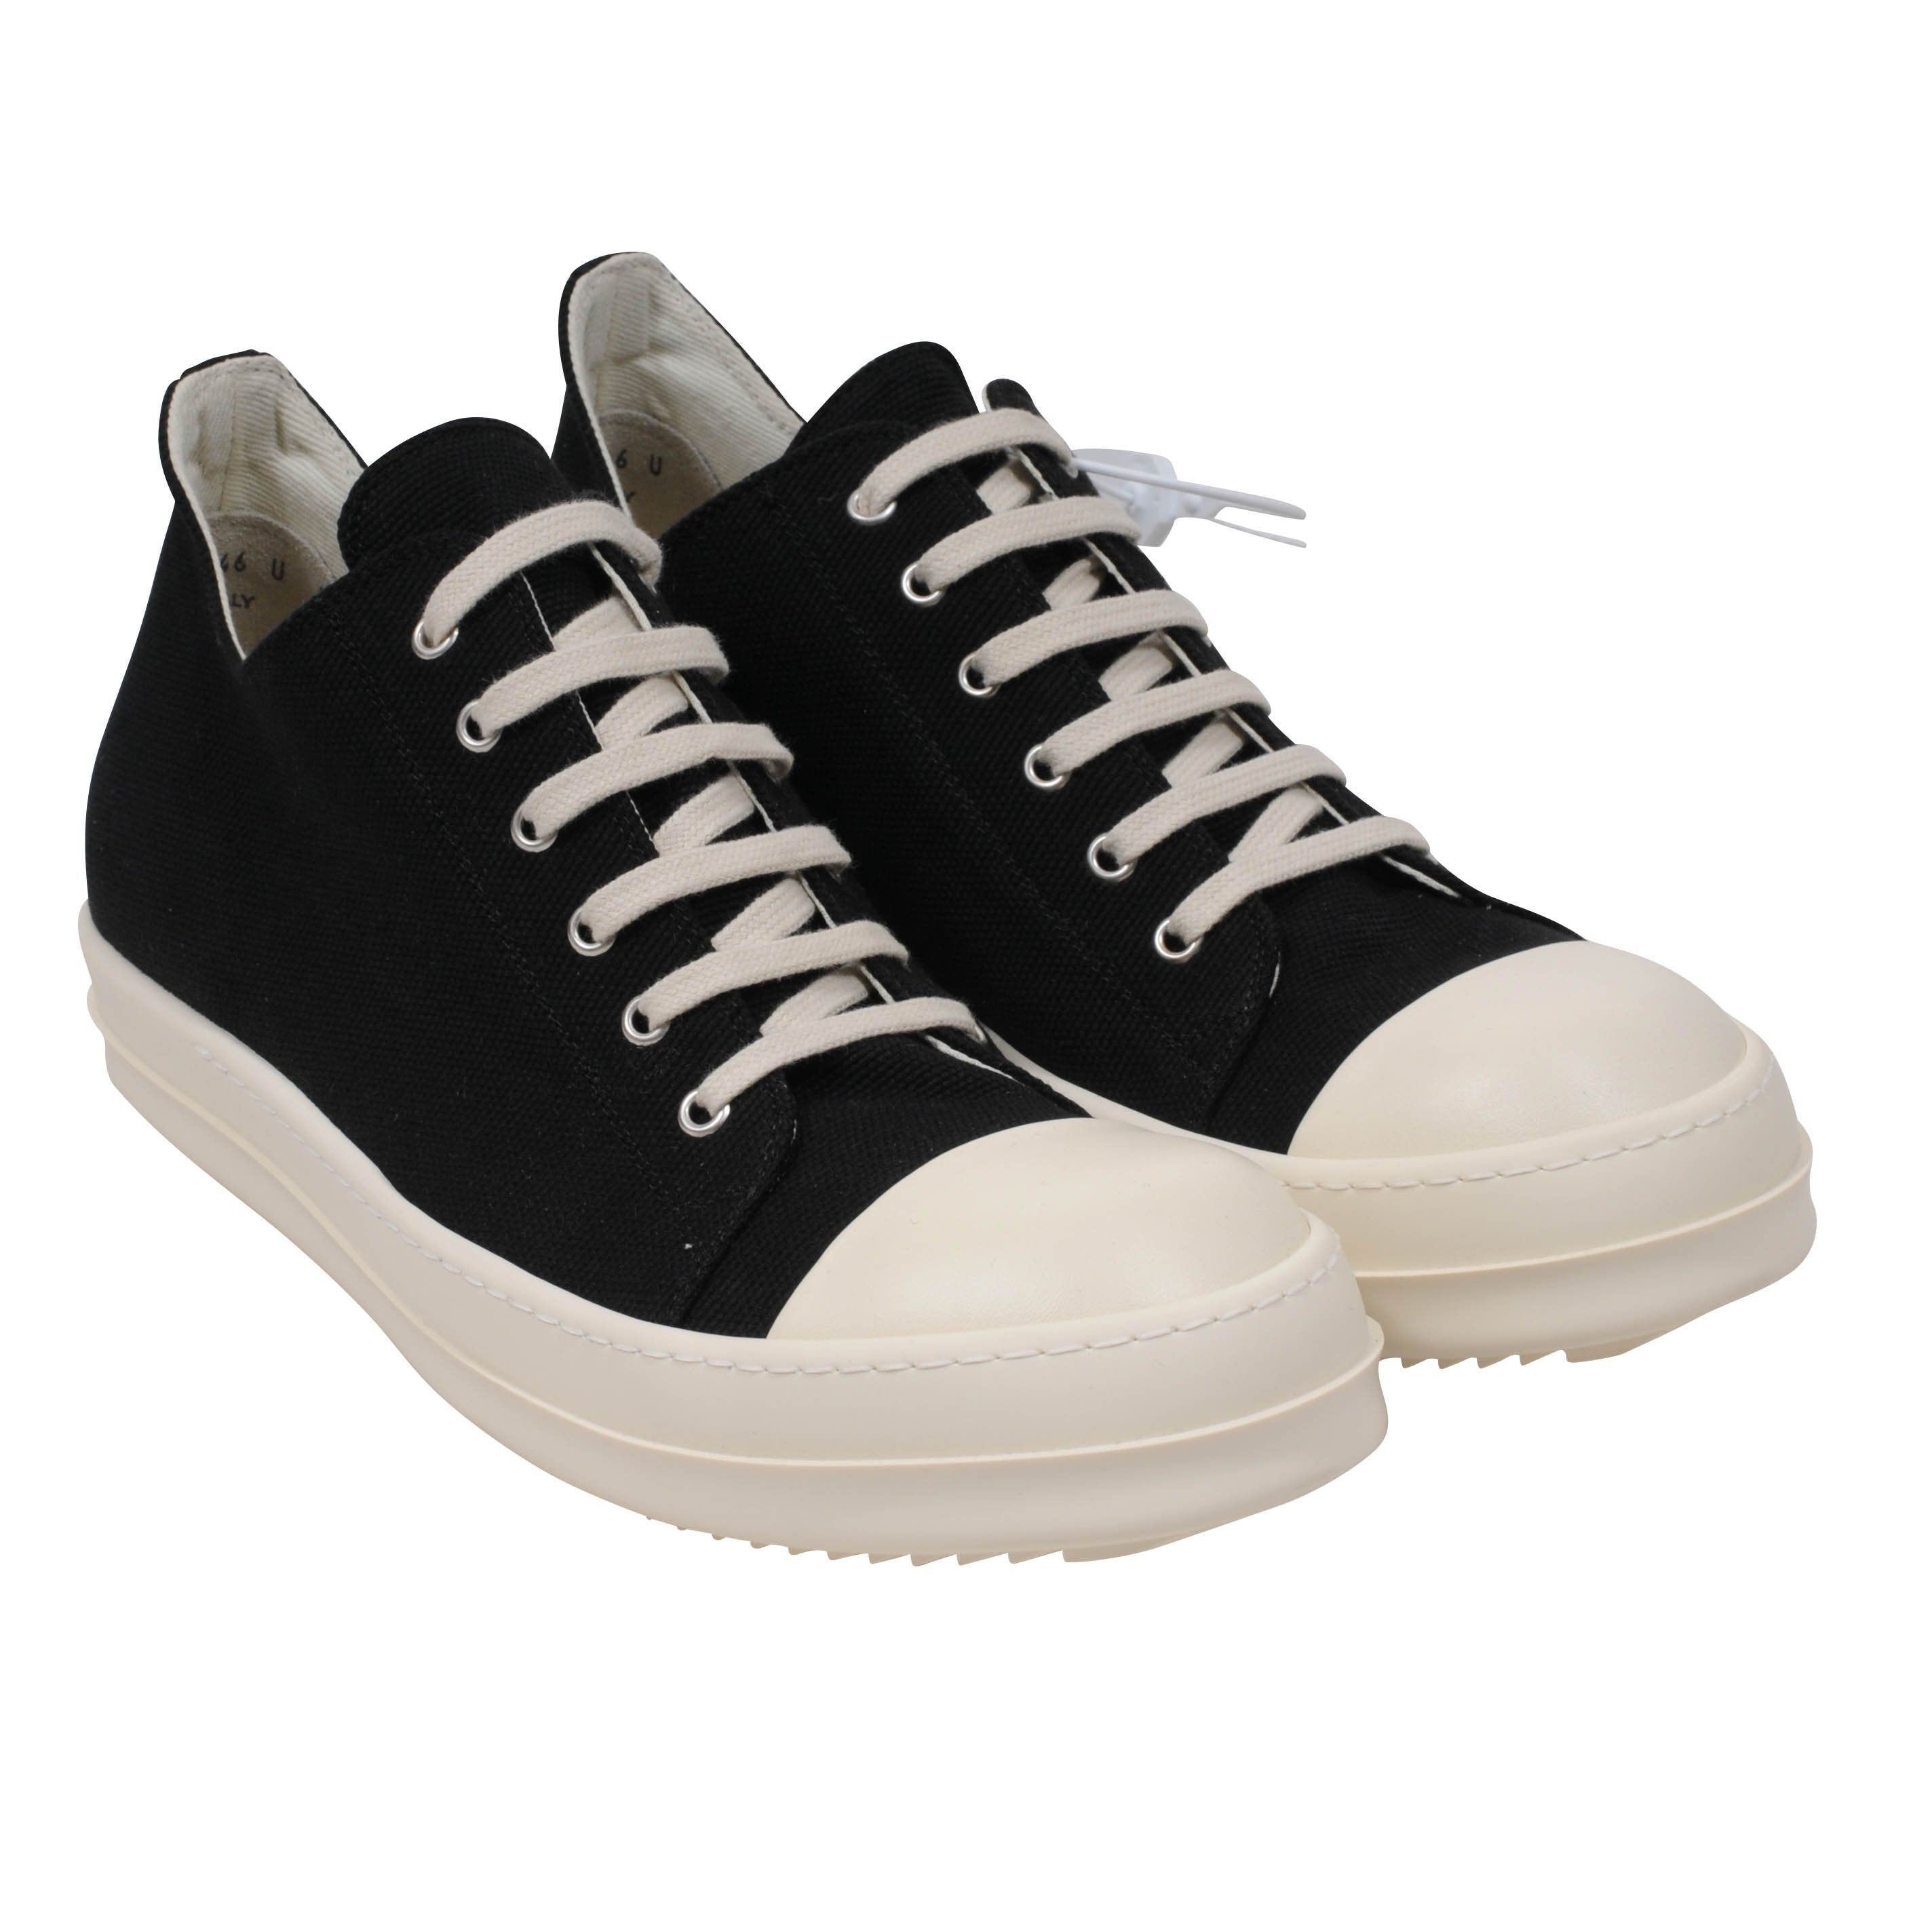 Rick Owens Ramones Low-cut, Men's Fashion, Footwear, Sneakers on